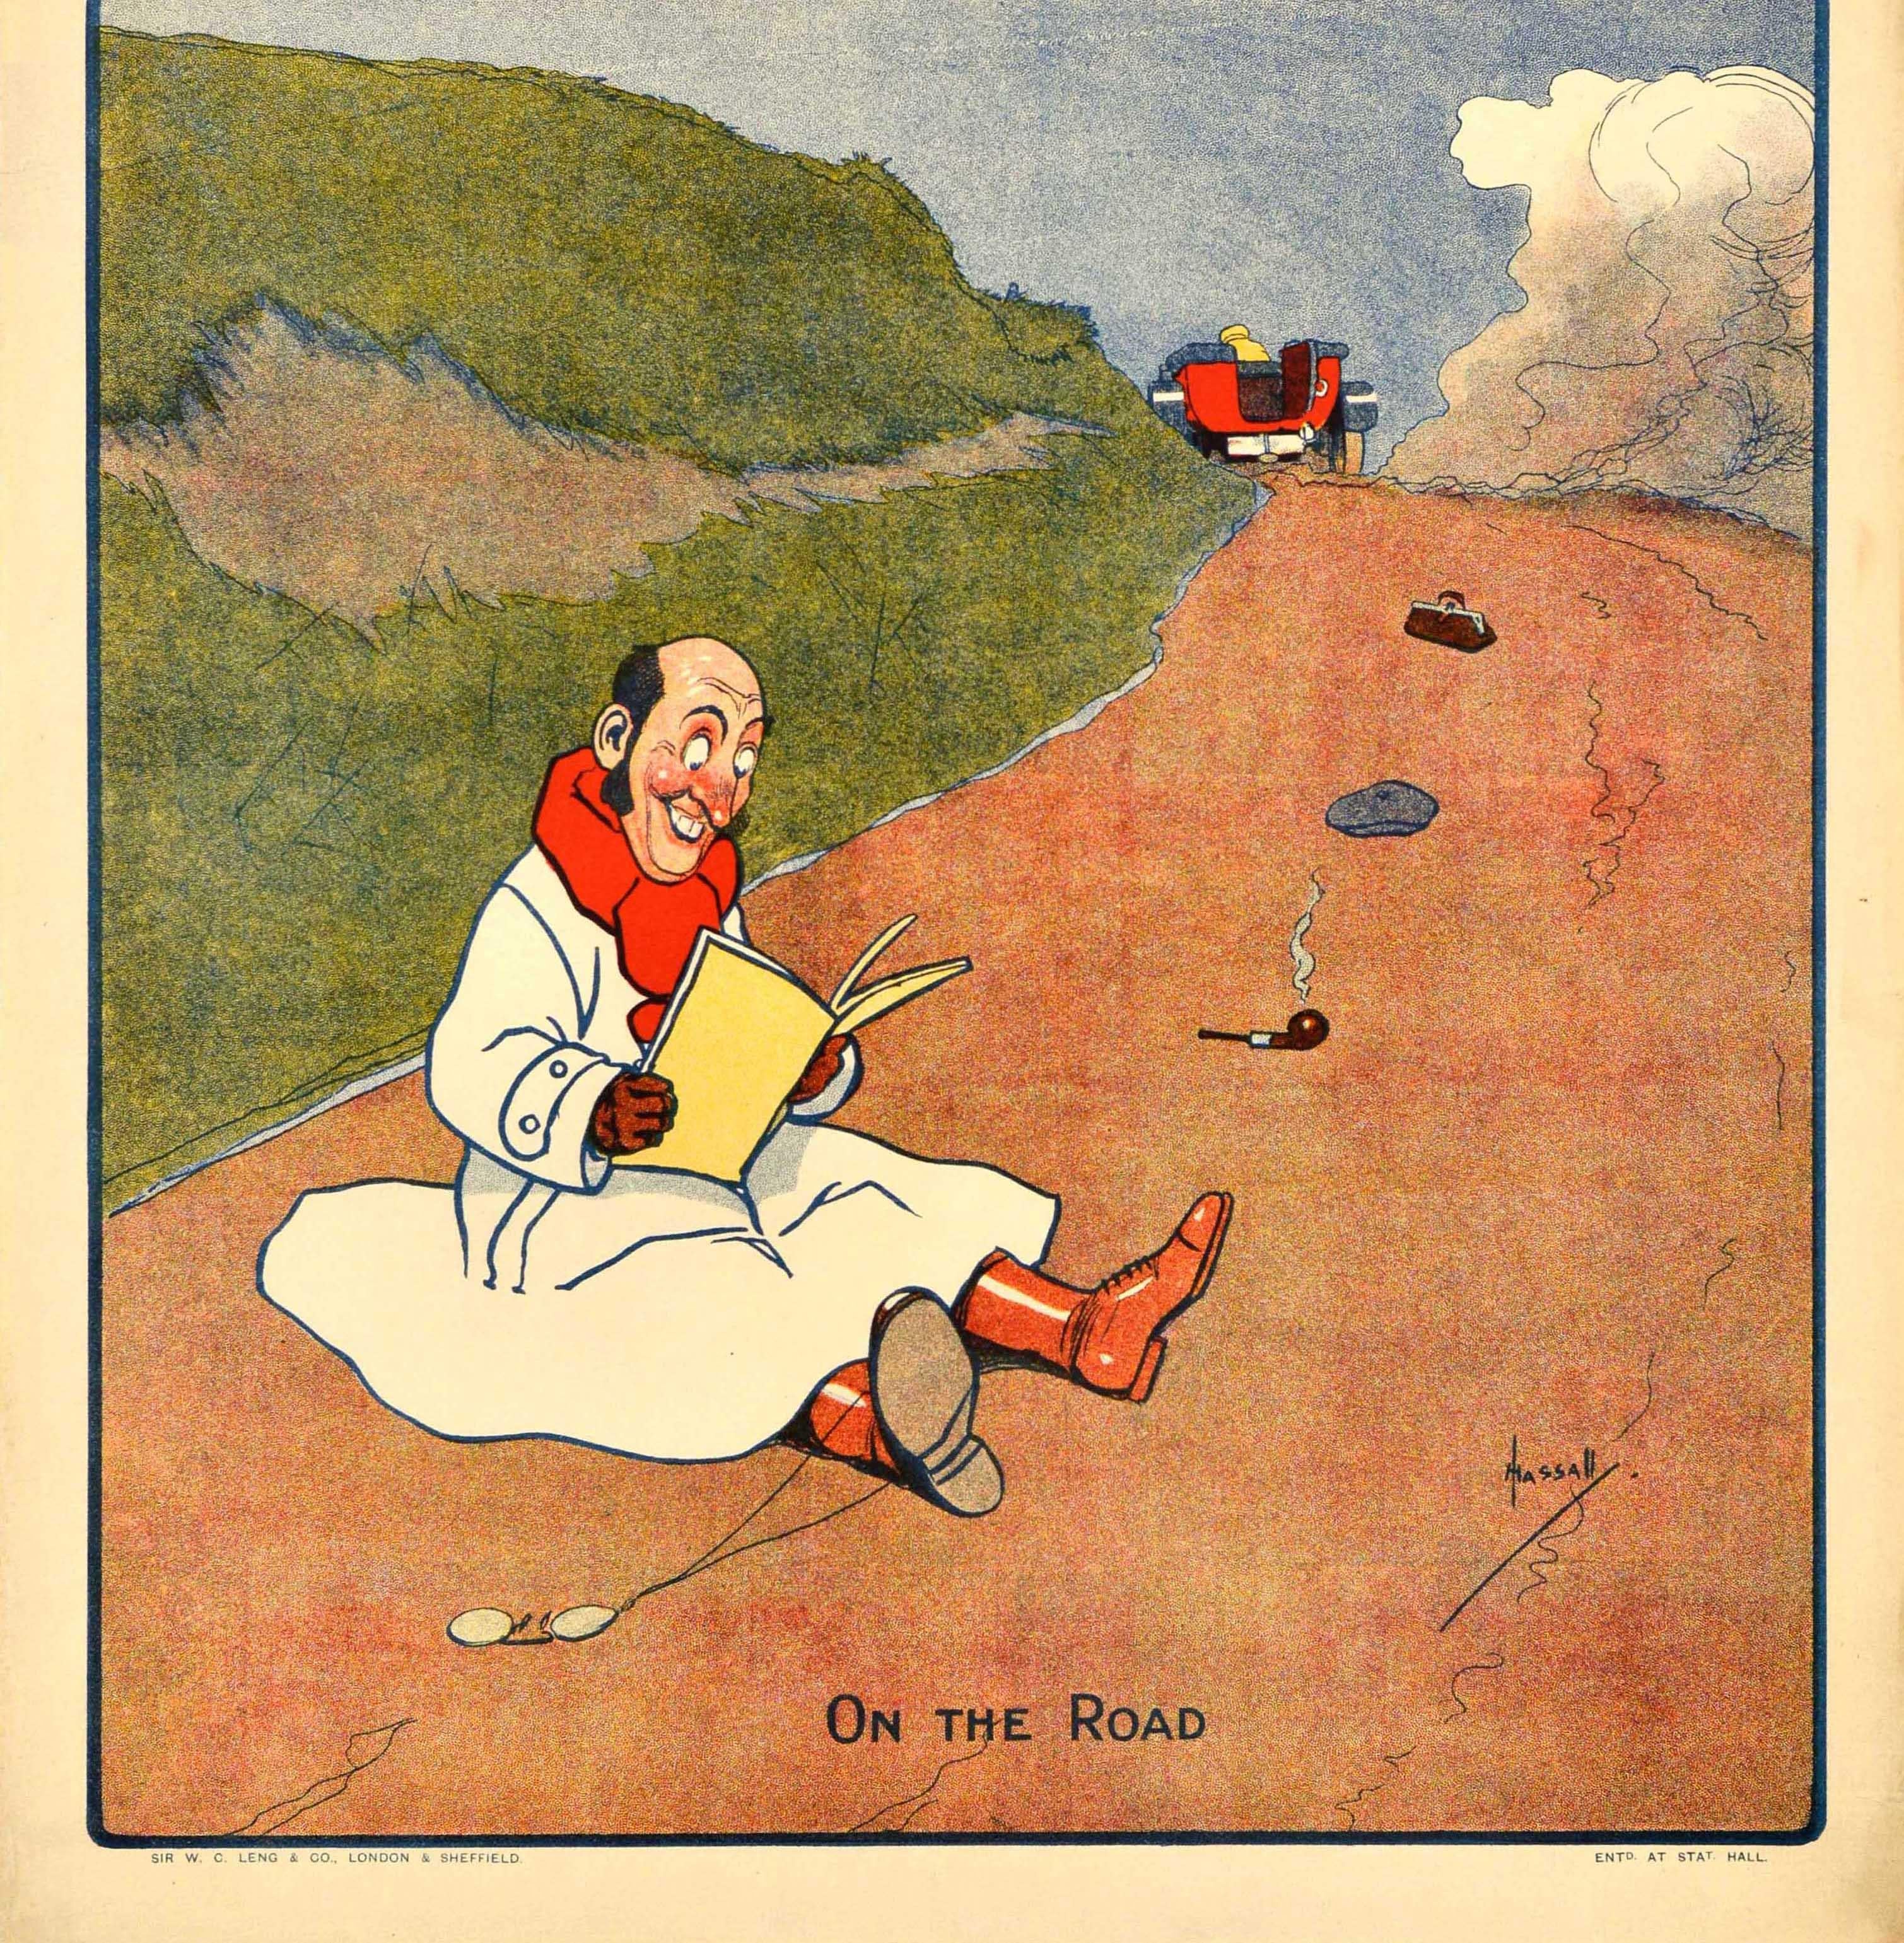 Affiche publicitaire originale de journal ancien - The Weekly Telegraph On The Road - représentant un homme souriant vêtu d'un long manteau blanc, d'une écharpe rouge et de bottes, assis sur une route et lisant le journal Weekly Telegraph avec ses